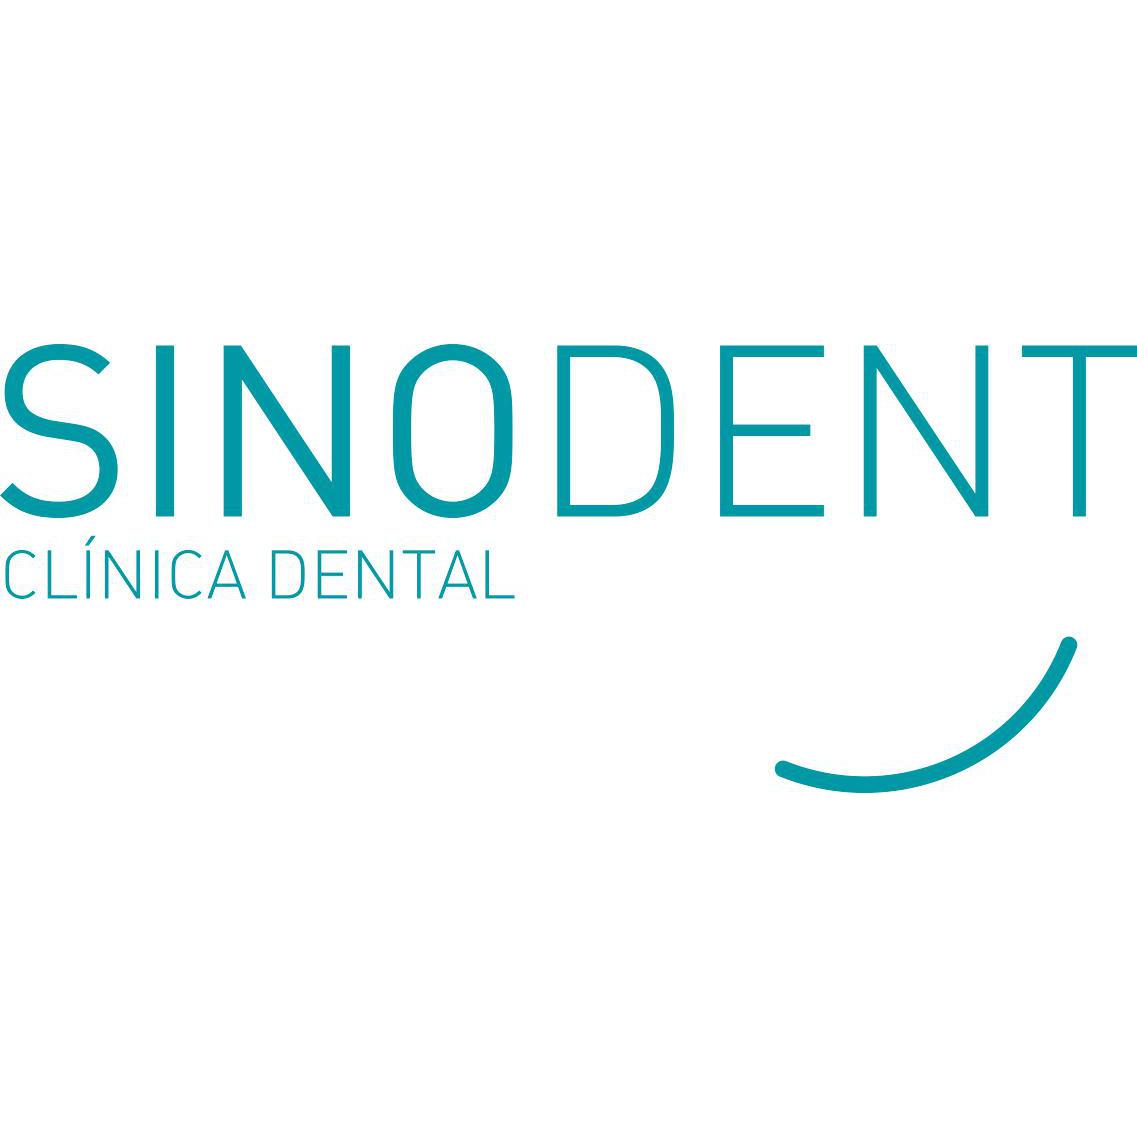 Sinodent Clinica Dental Logo